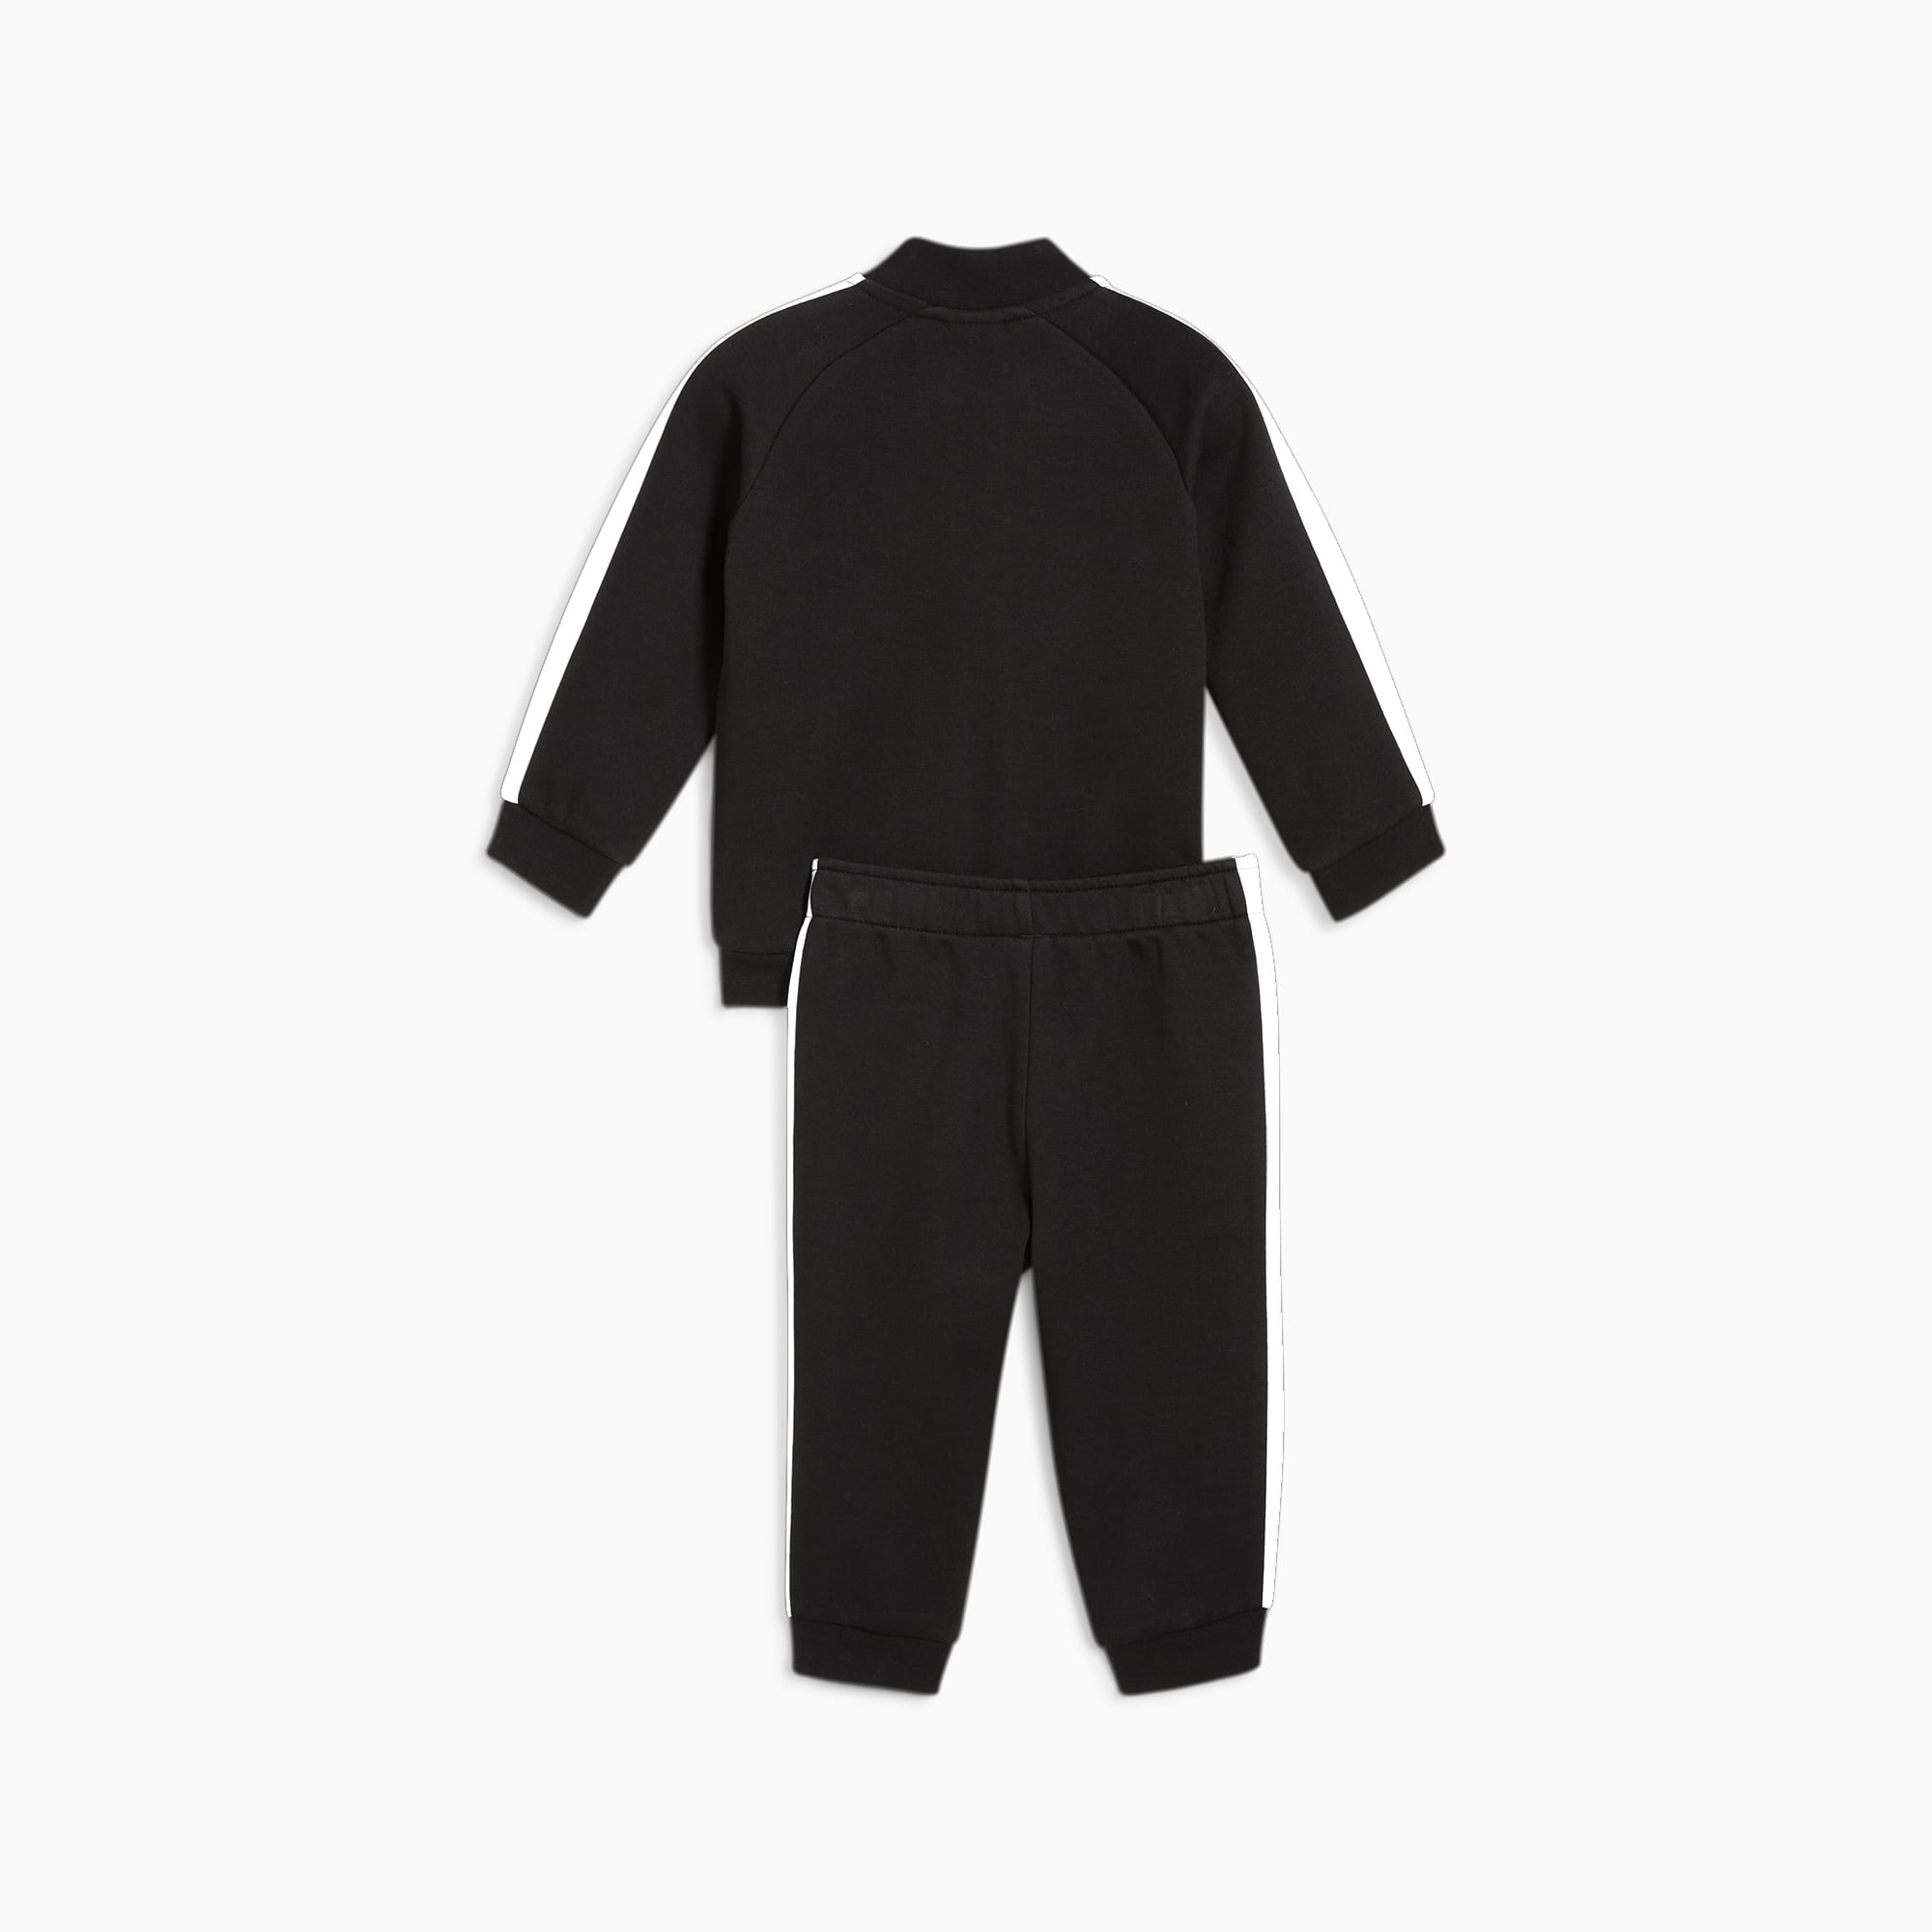 PUMA MINICATS T7 ICONIC Trainingsanzug Baby Für Kinder, Schwarz, Größe: 68, Kleidung